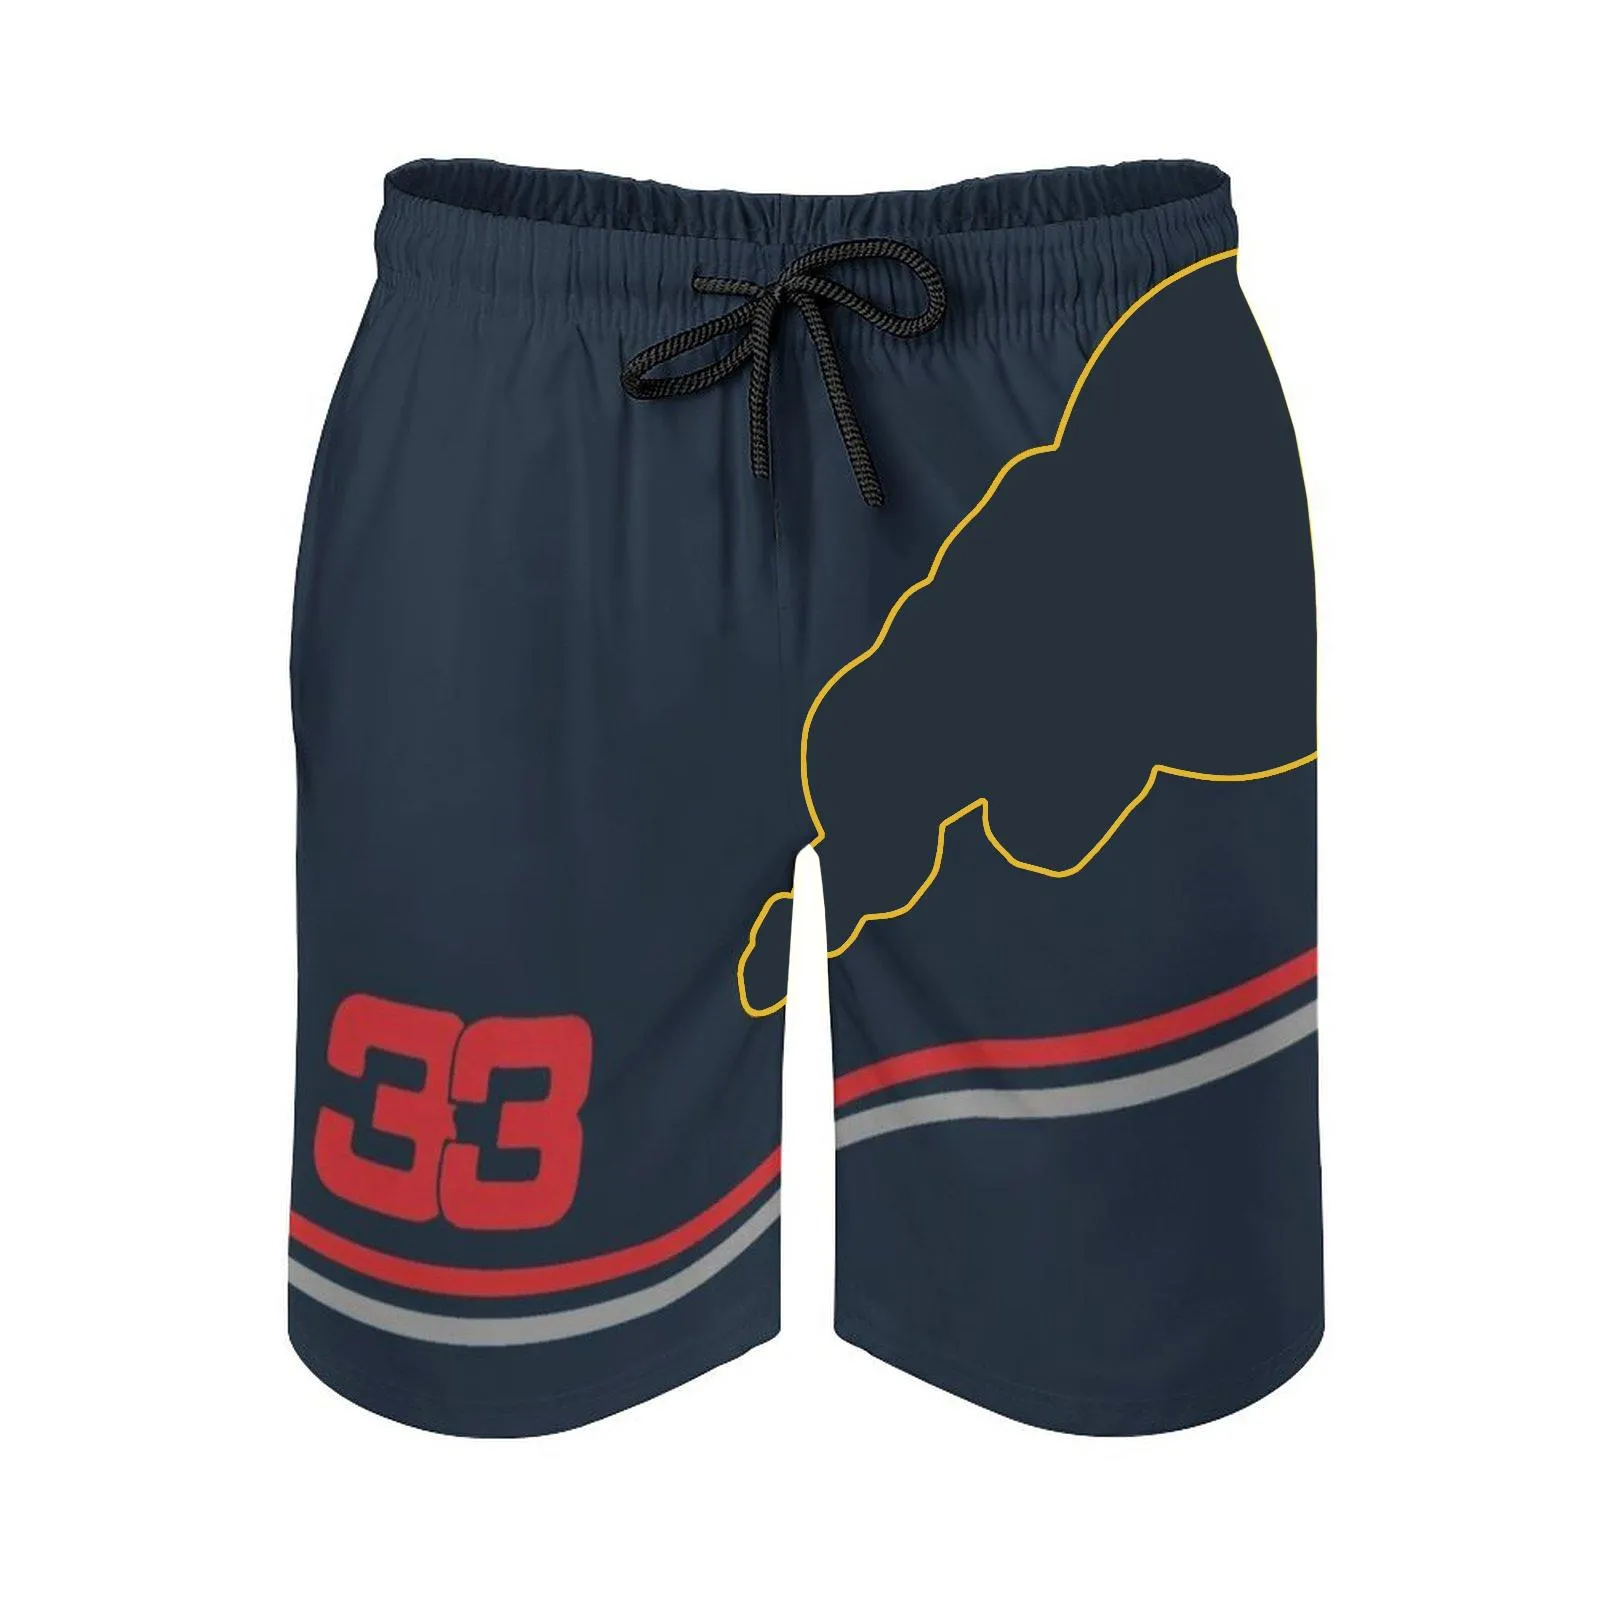 F1 calças de corrida shorts fórmula 1 equipe roupas masculinas fã roupas casuais respirável calças de praia282I